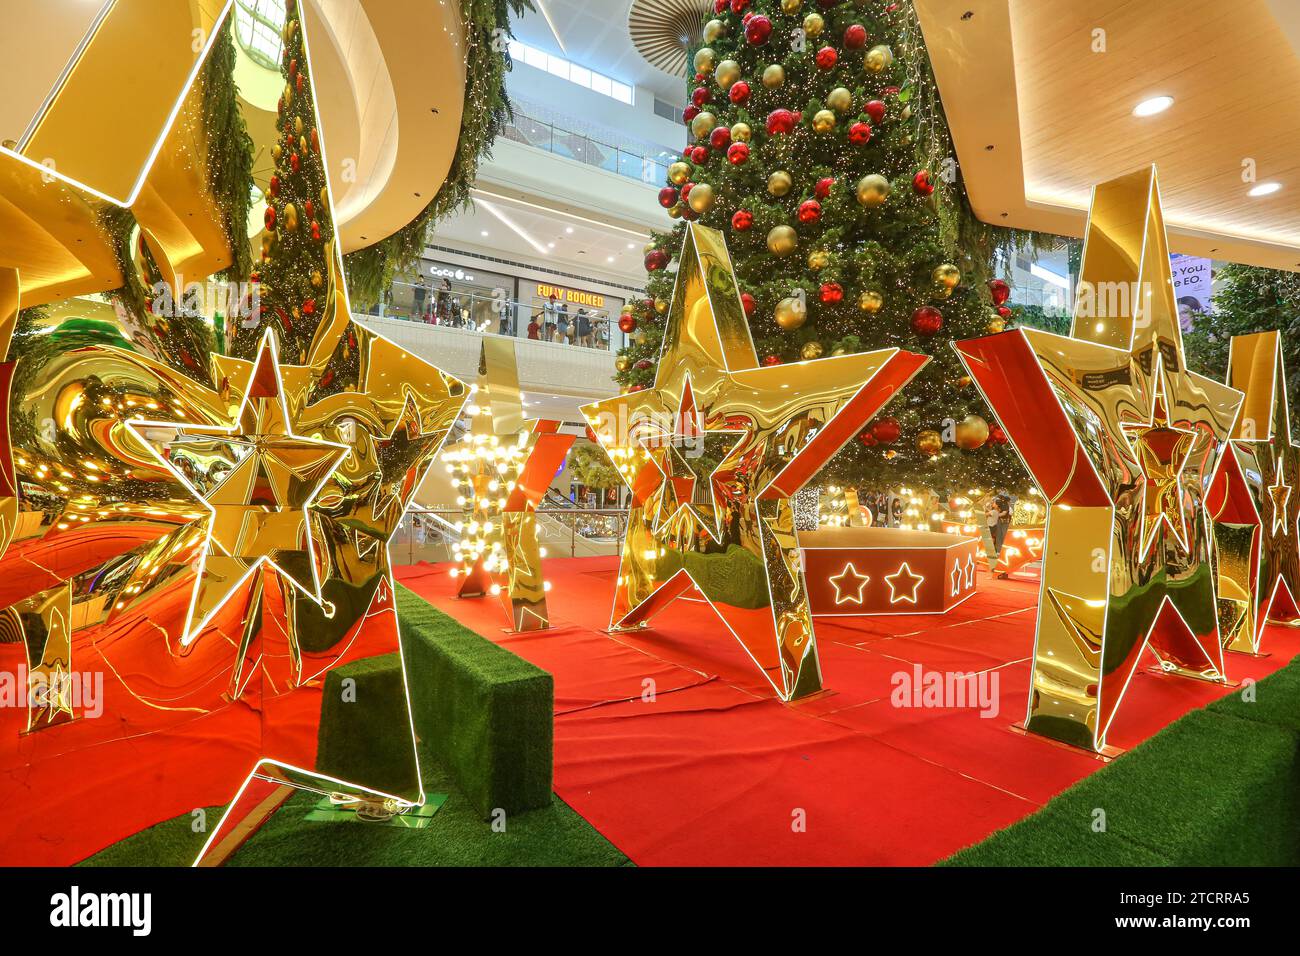 Riesige goldene reflektierende Sterne, Weihnachtsdekoration, philippinisches Einkaufszentrum, Weihnachtsambiente, Feiertagsatmosphäre, Sternspiegel, Baumkugeln Stockfoto